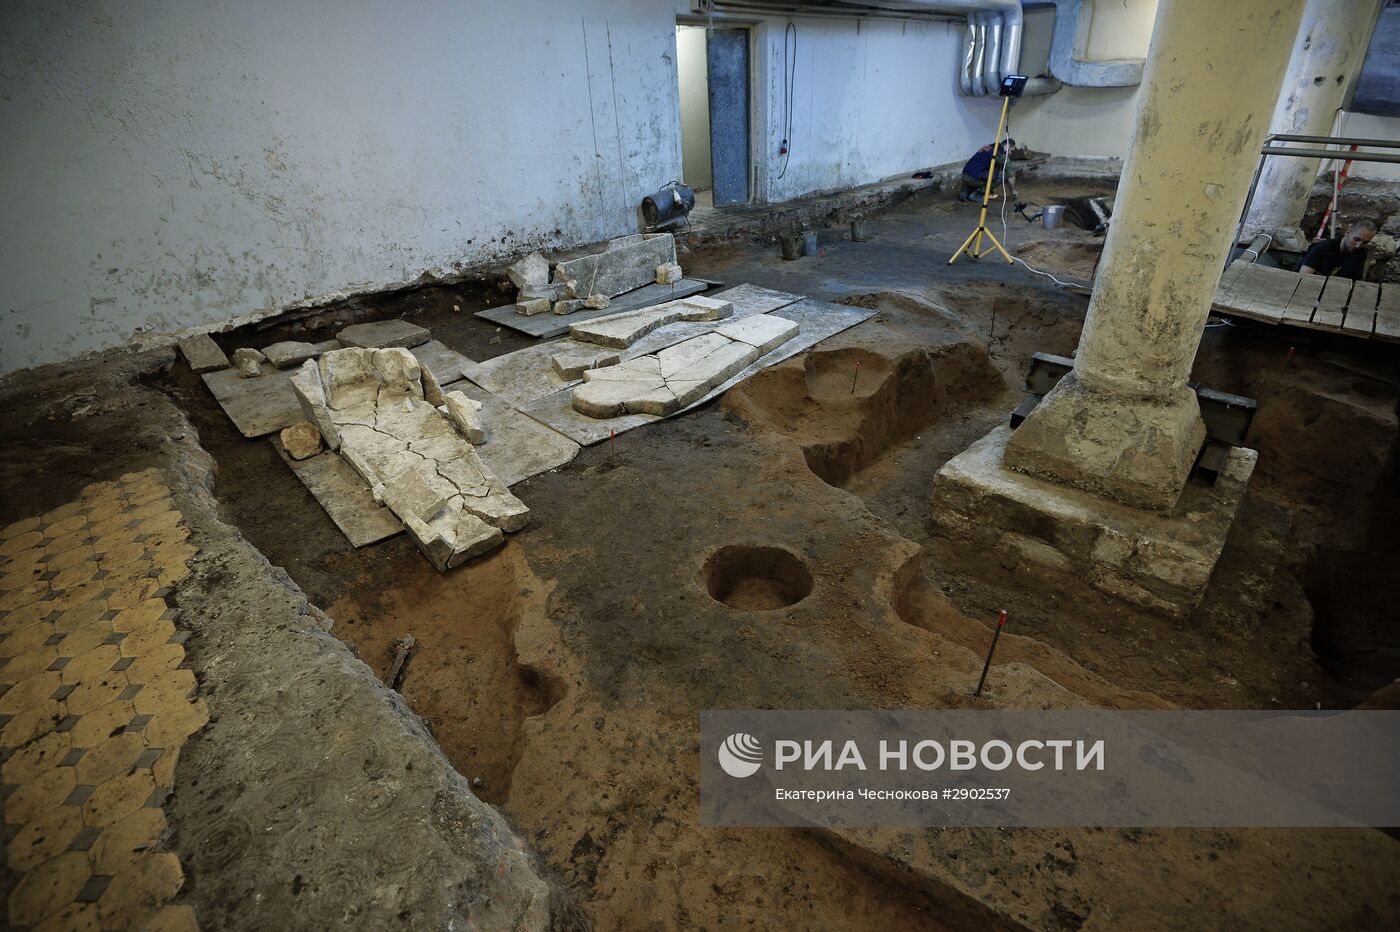 Археологические раскопки на месте снесенного 14-го корпуса Московского Кремля